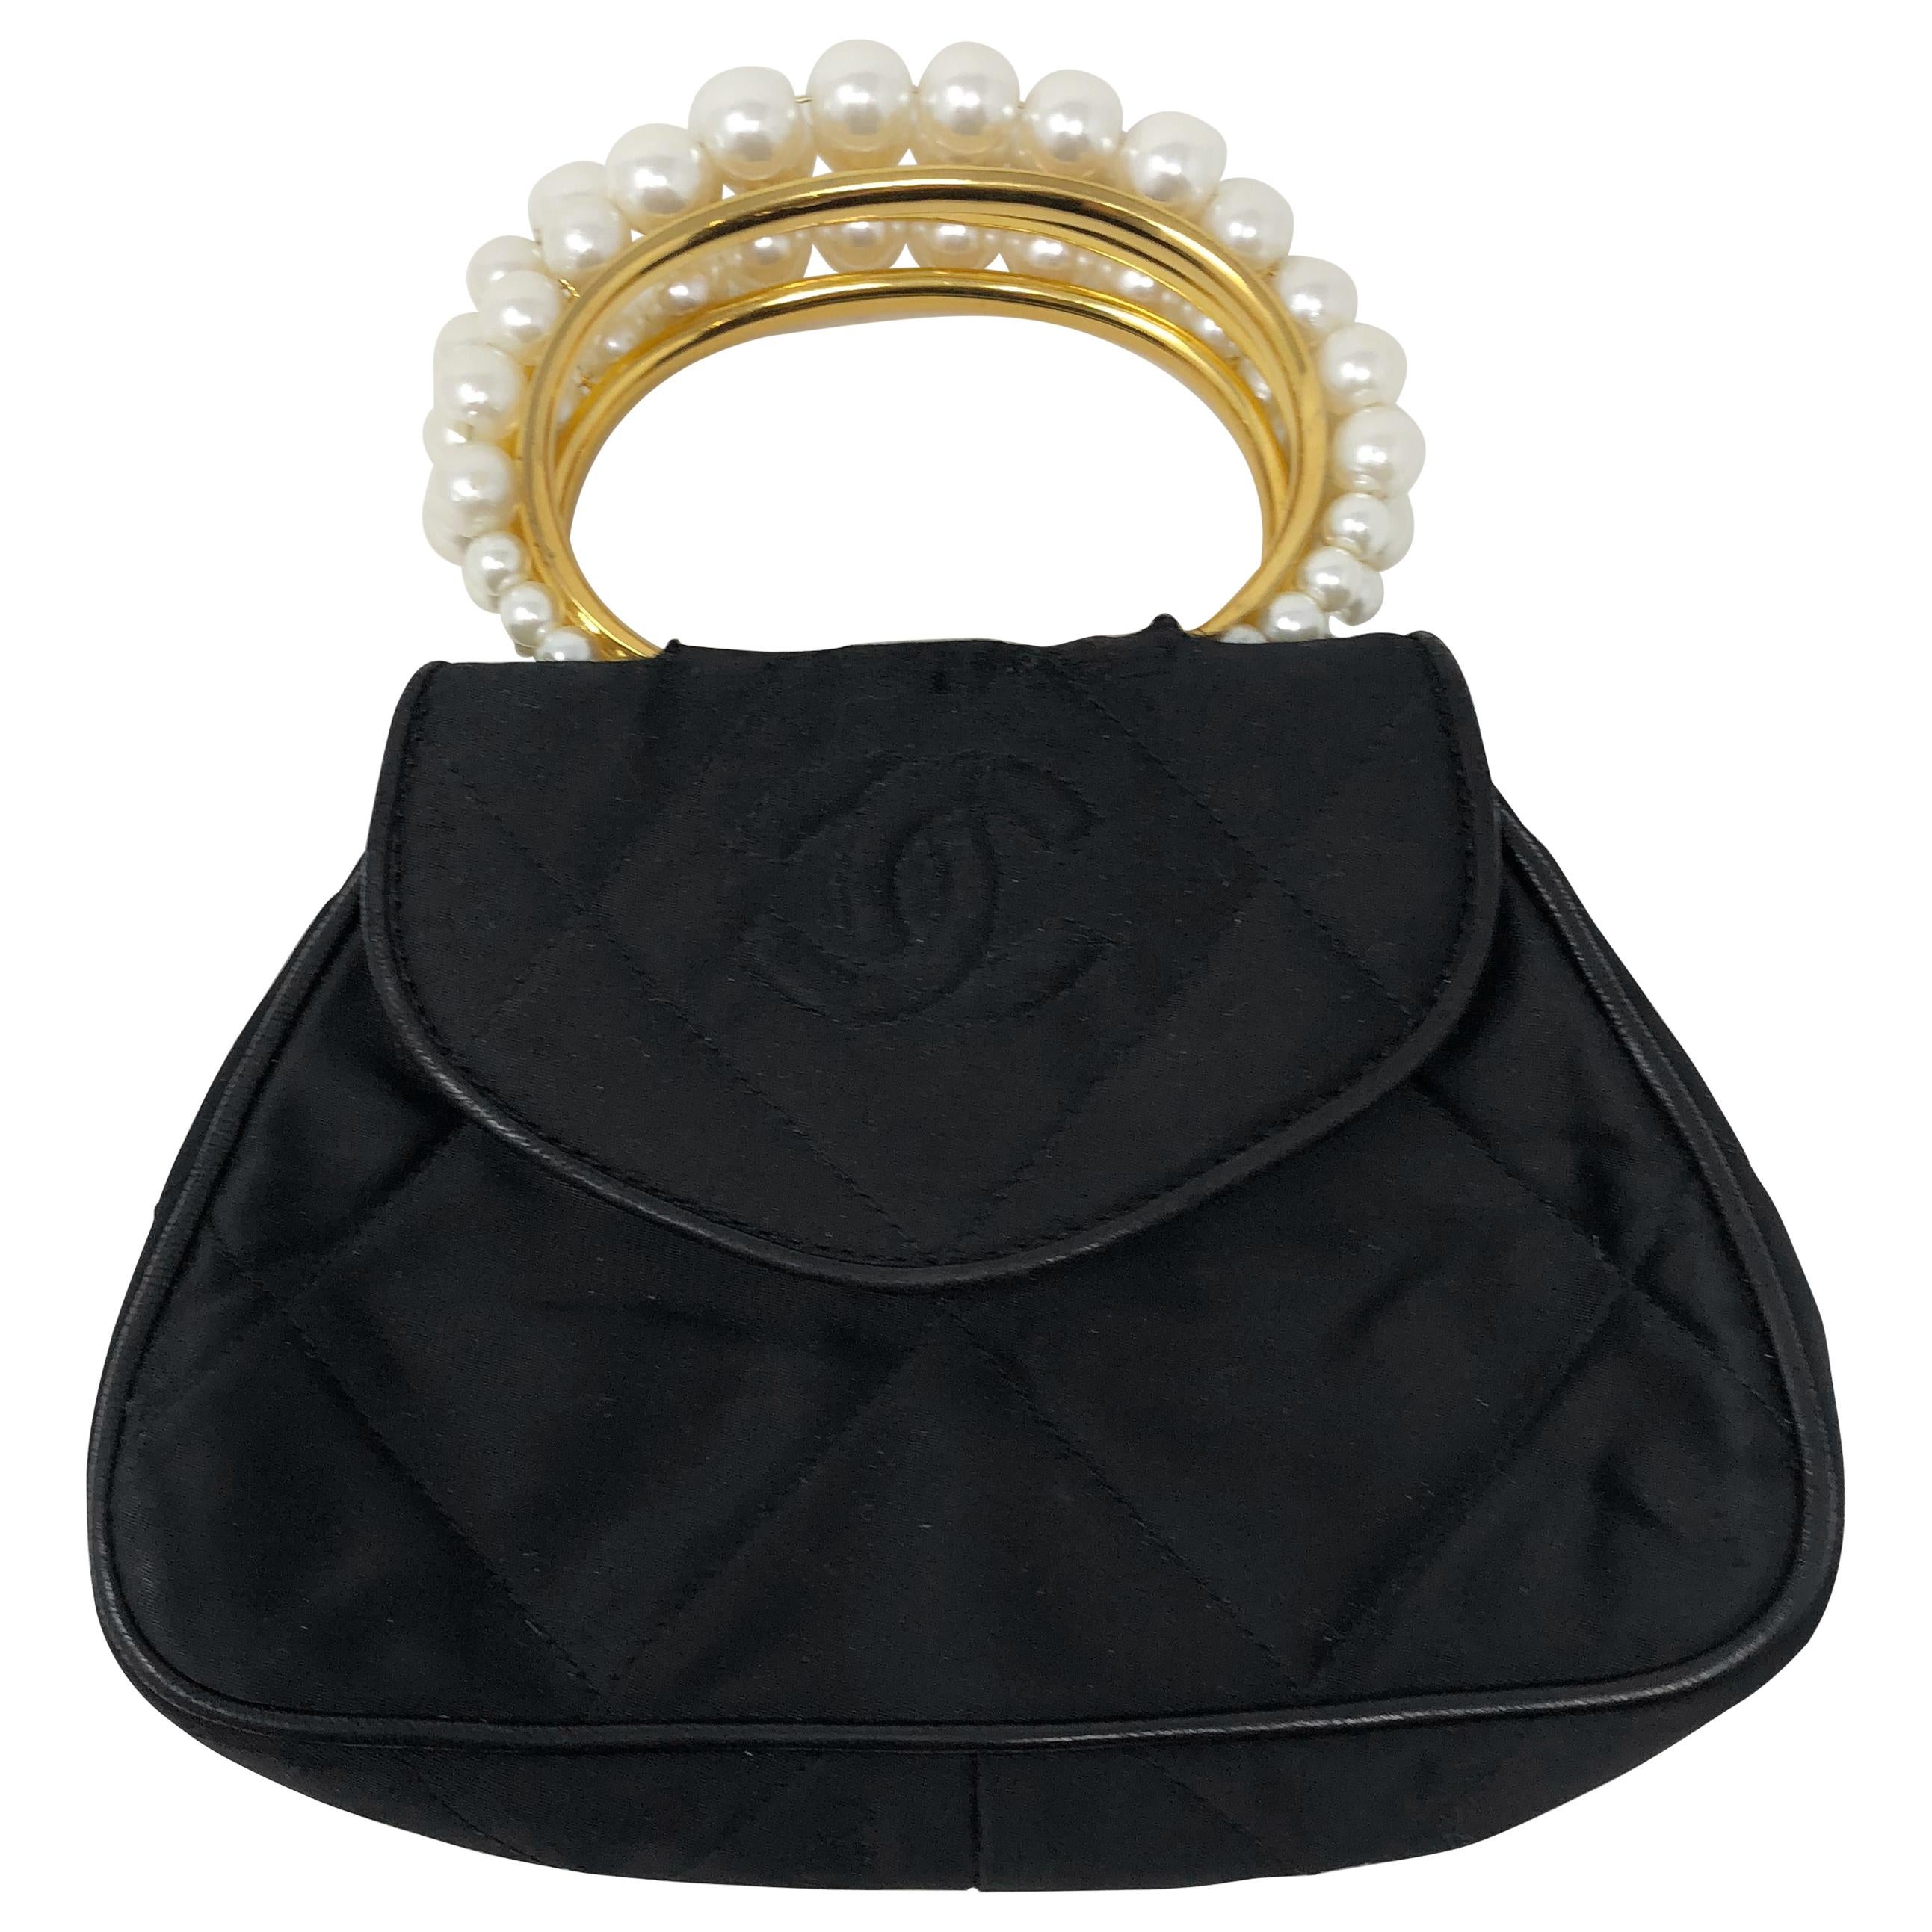 Chanel Satin and Pearl Handle Bag